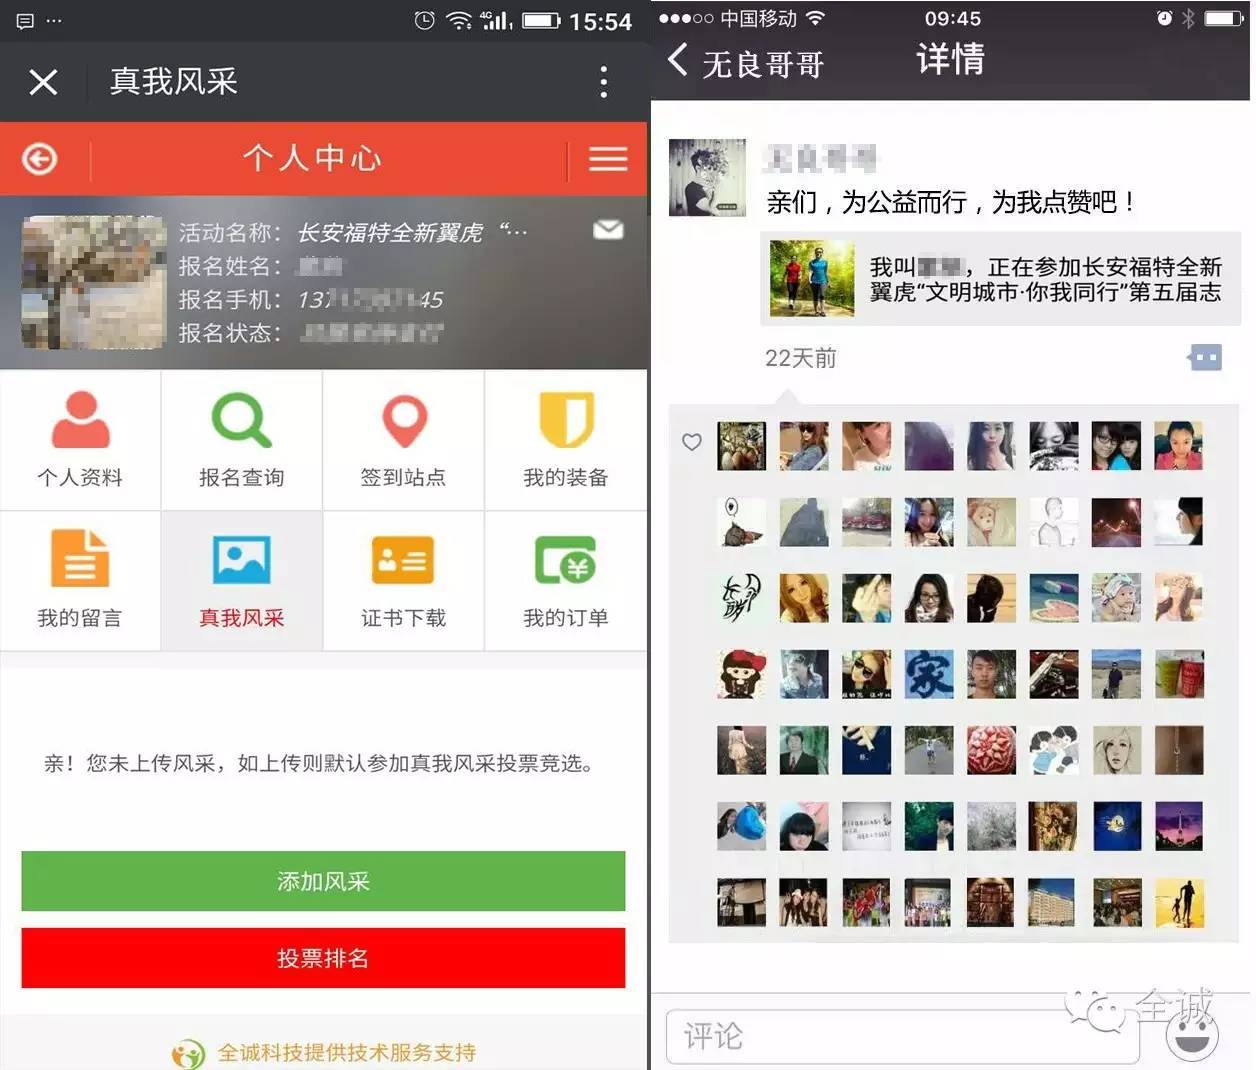 千人徒步游茶山,"互联网 "为东莞运动再添新活力!